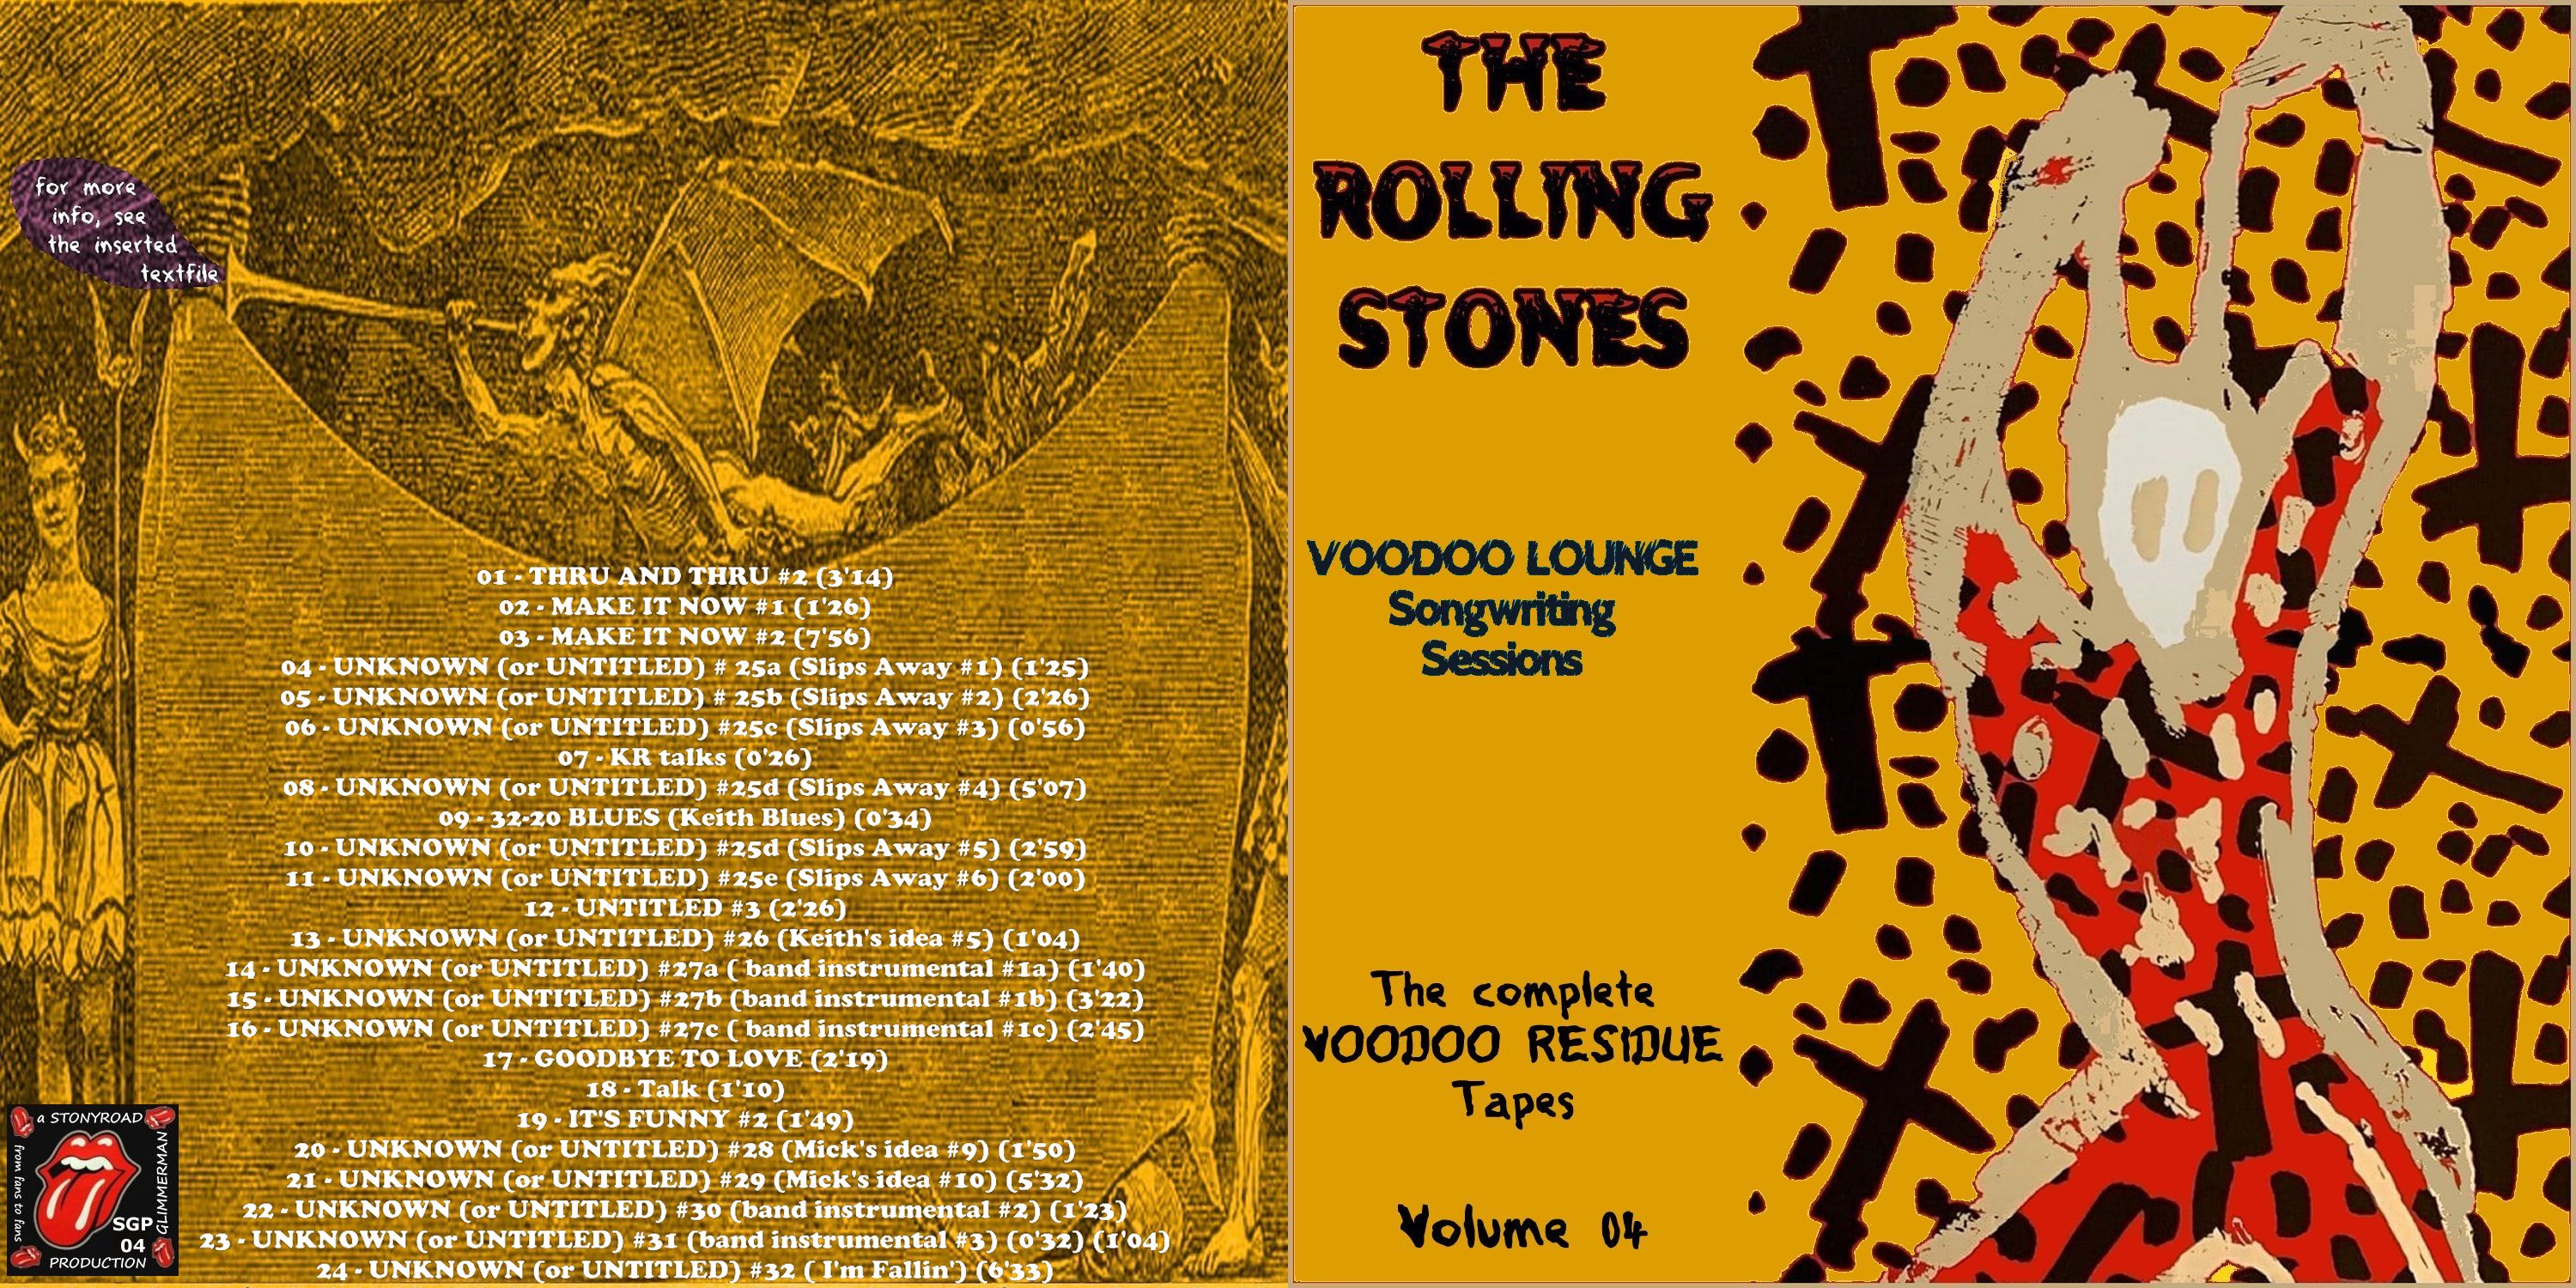 RollingStones1993-05-20Vol04VoodoLoungeSongwritingSessions (1).jpg